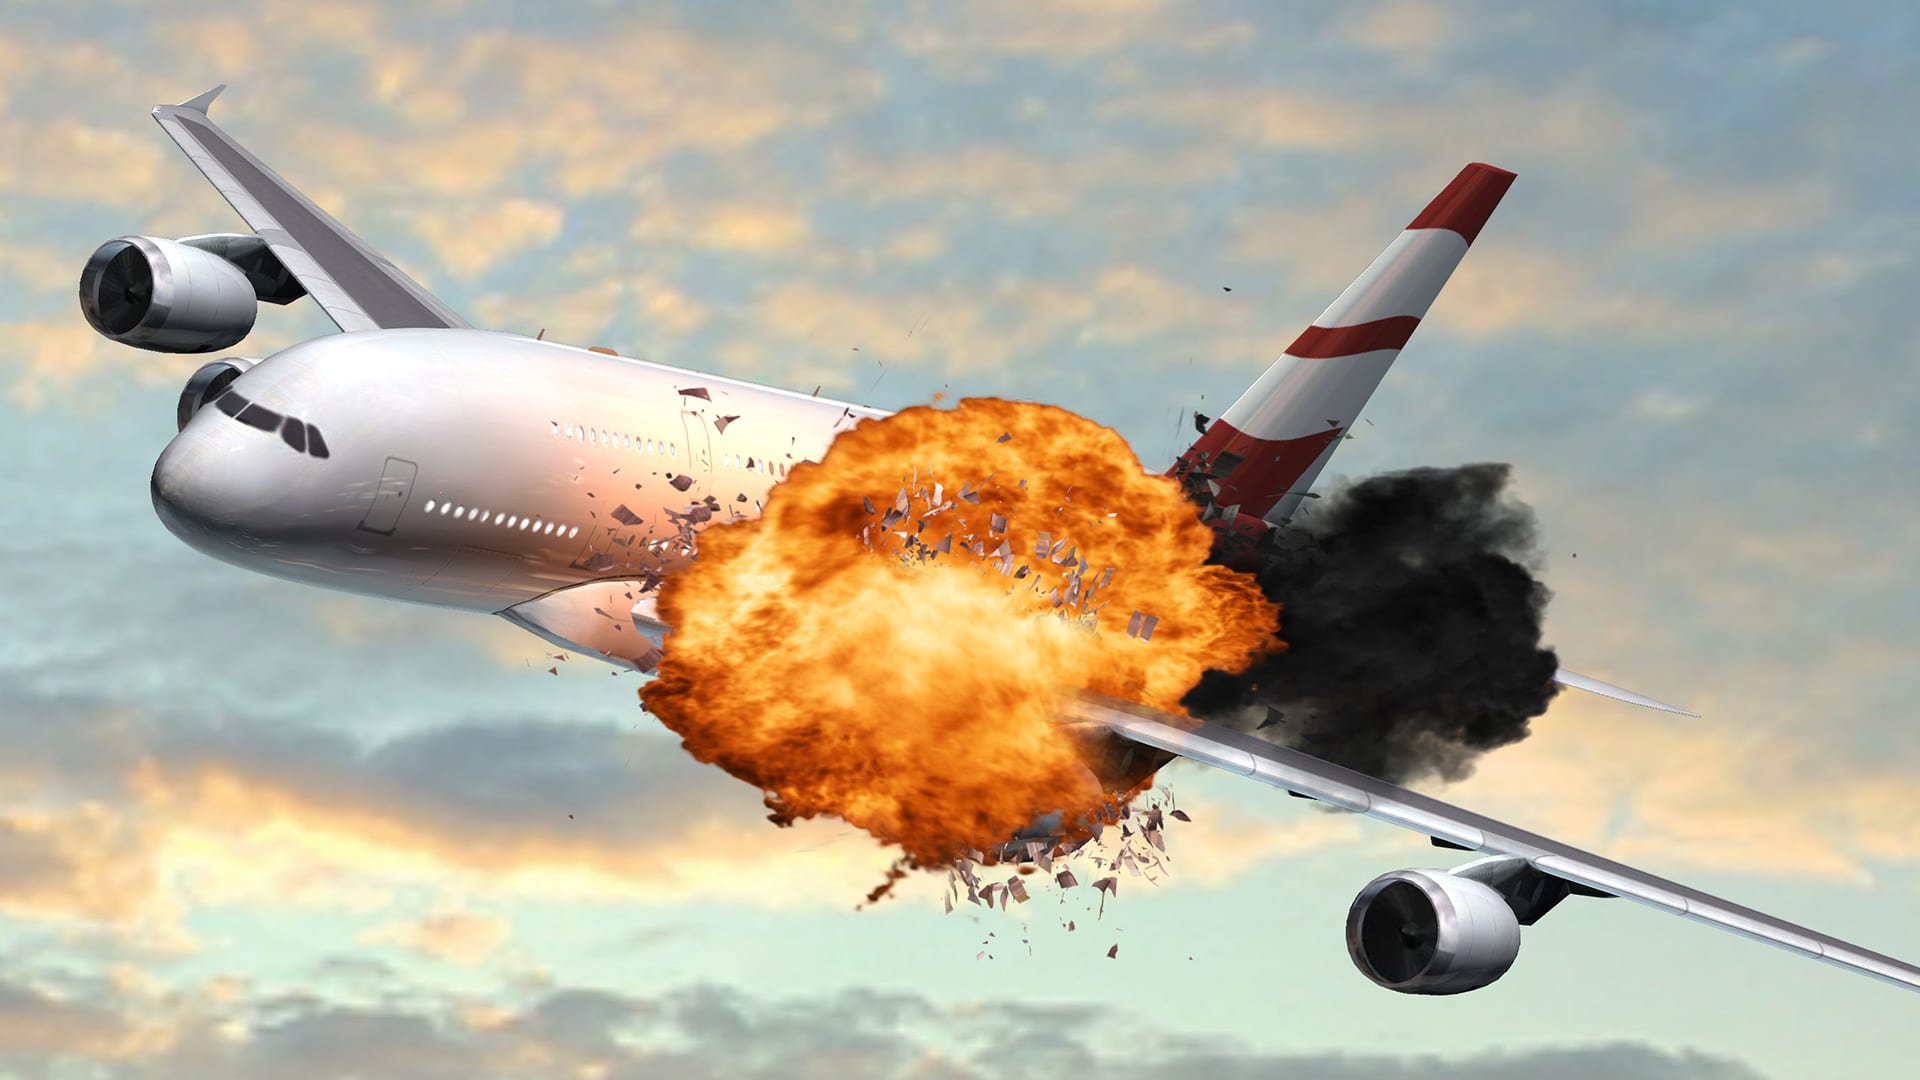 Letadlo po zásahu (ilustrační foto)